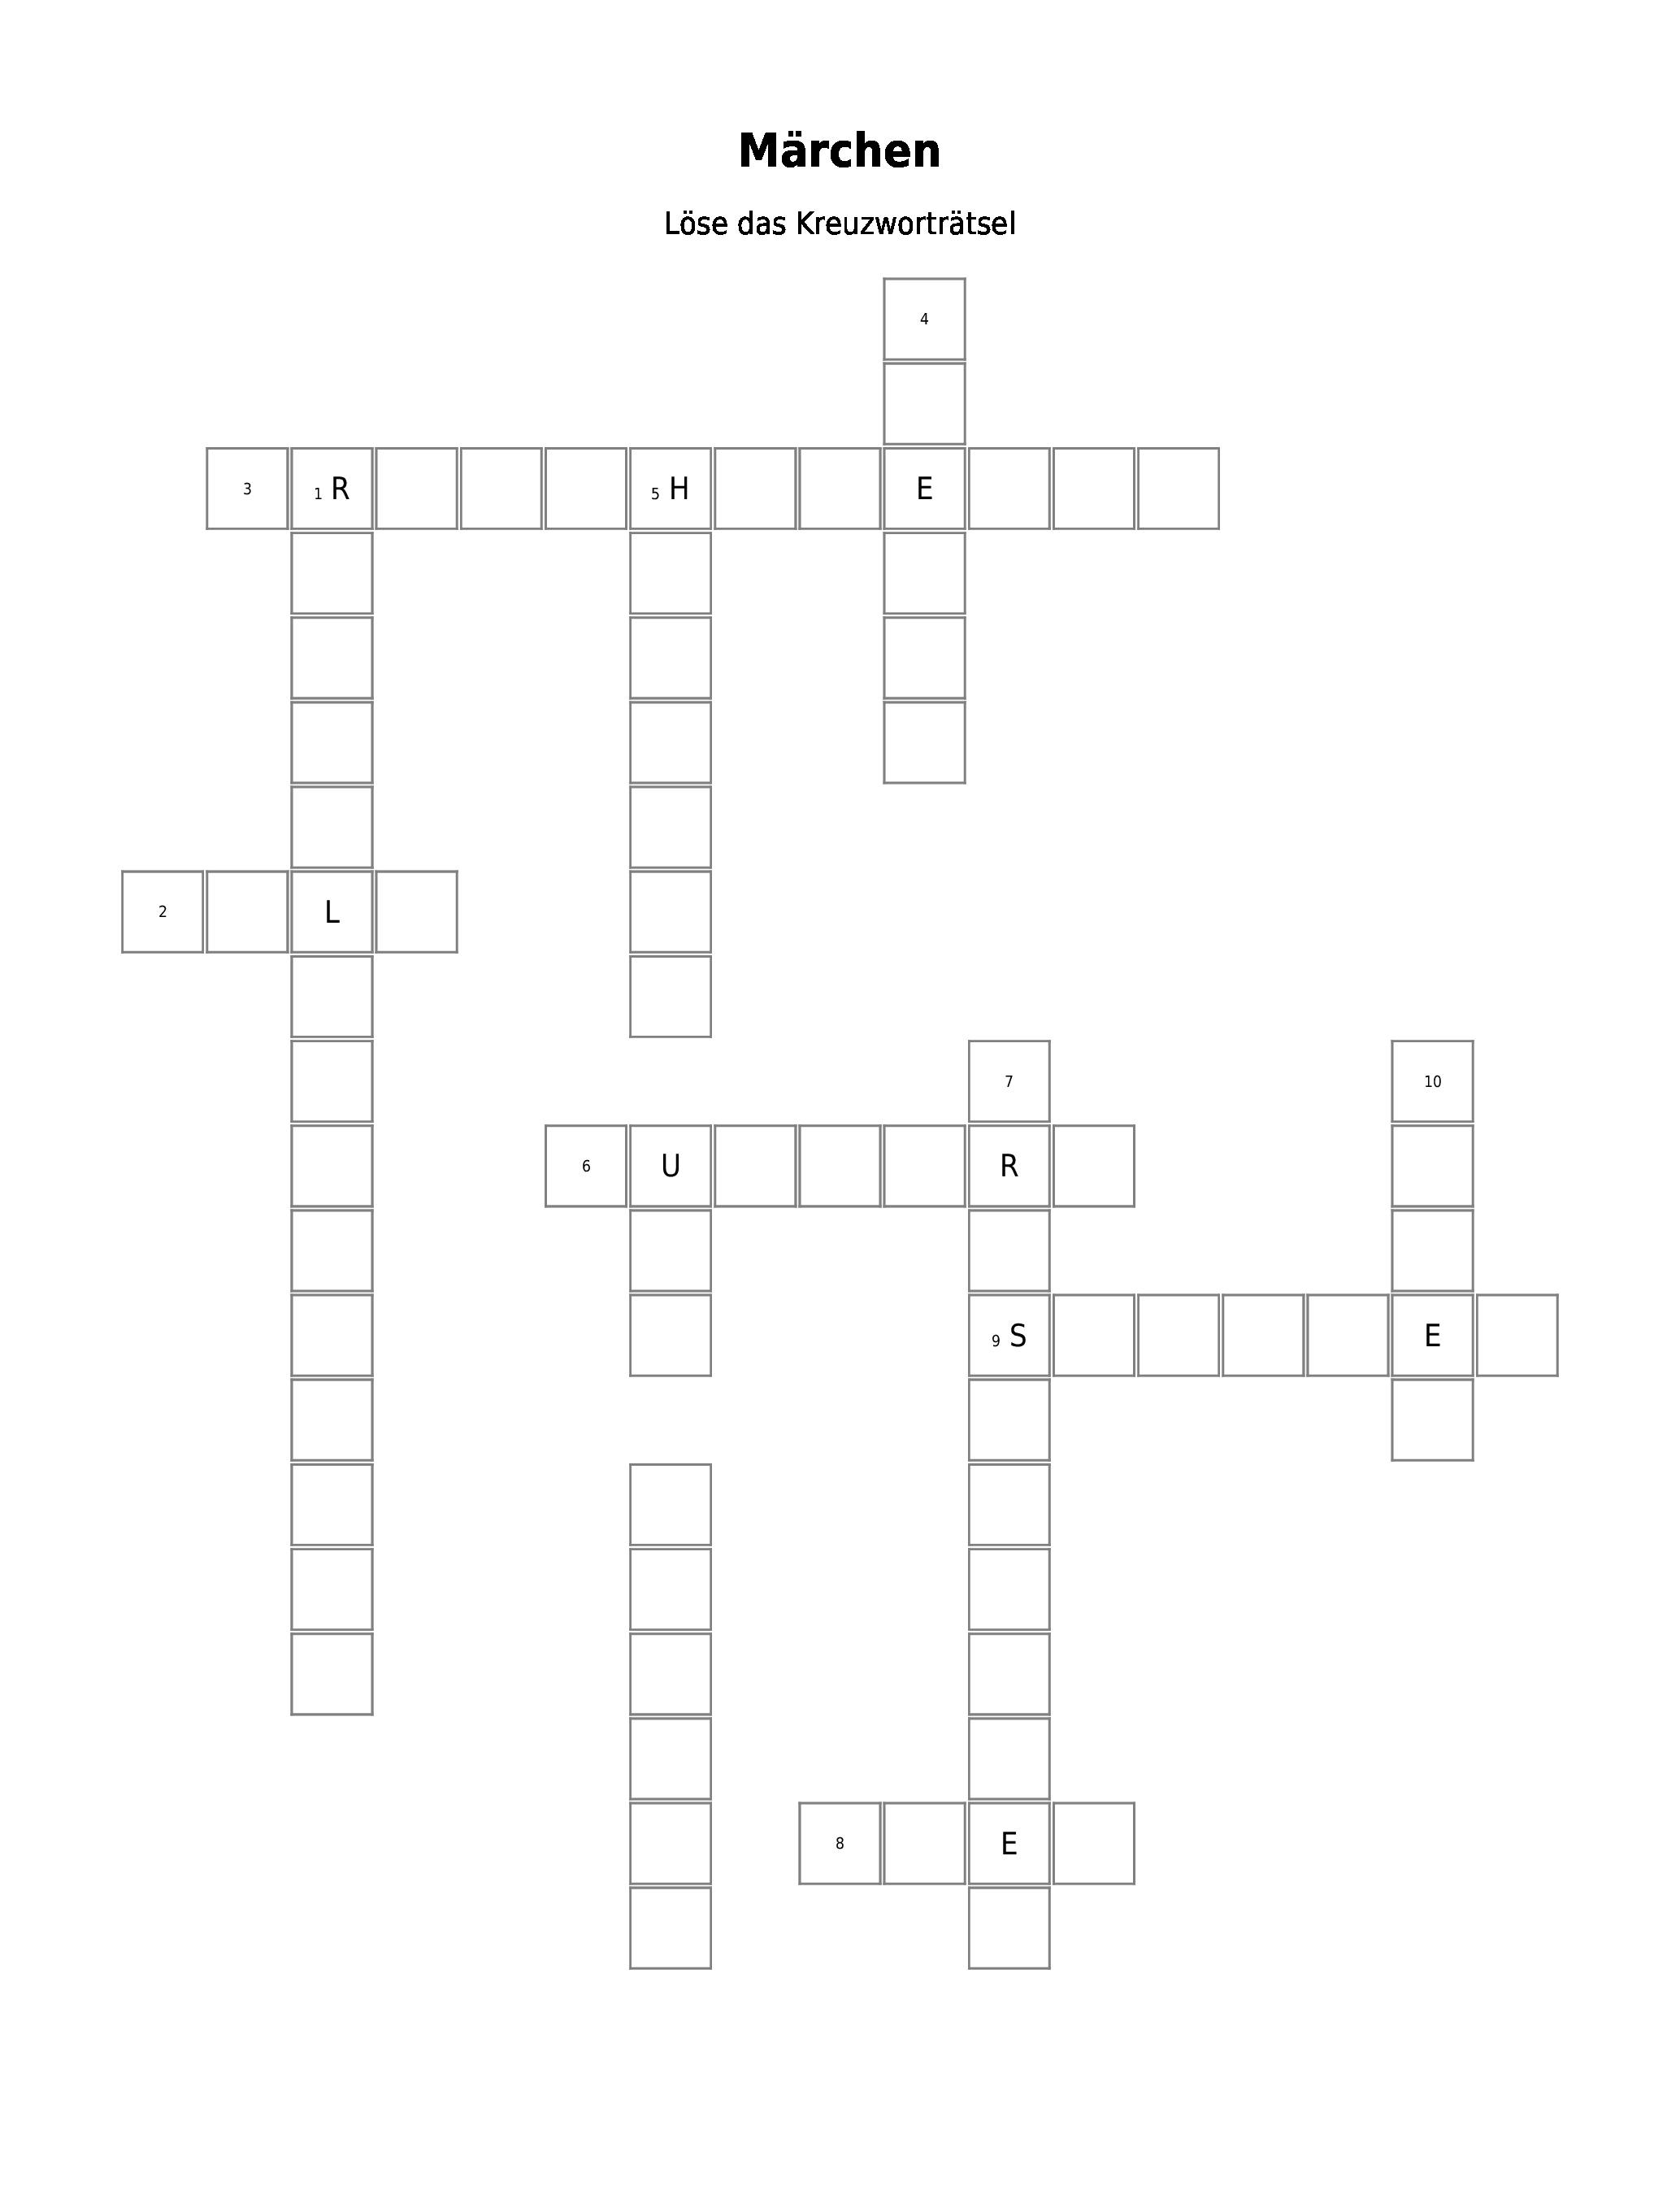 Ein Märchen Kreuzworträtsel 10 Buchstaben